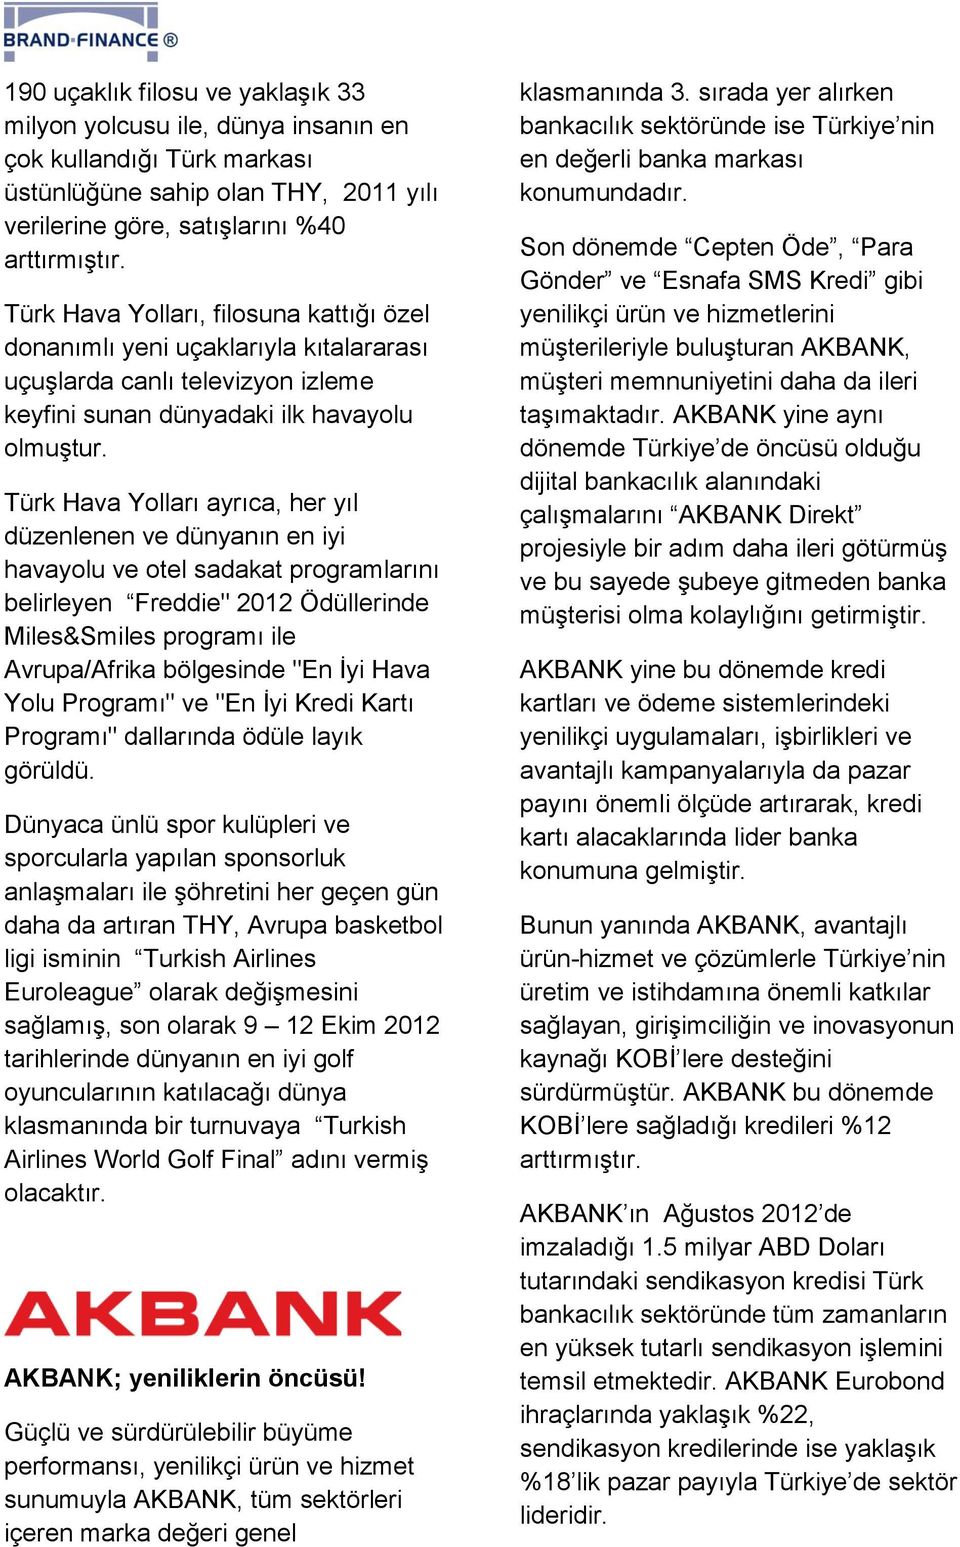 Türk Hava Yolları ayrıca, her yıl düzenlenen ve dünyanın en iyi havayolu ve otel sadakat programlarını belirleyen Freddie" 2012 Ödüllerinde Miles&Smiles programı ile Avrupa/Afrika bölgesinde "En İyi